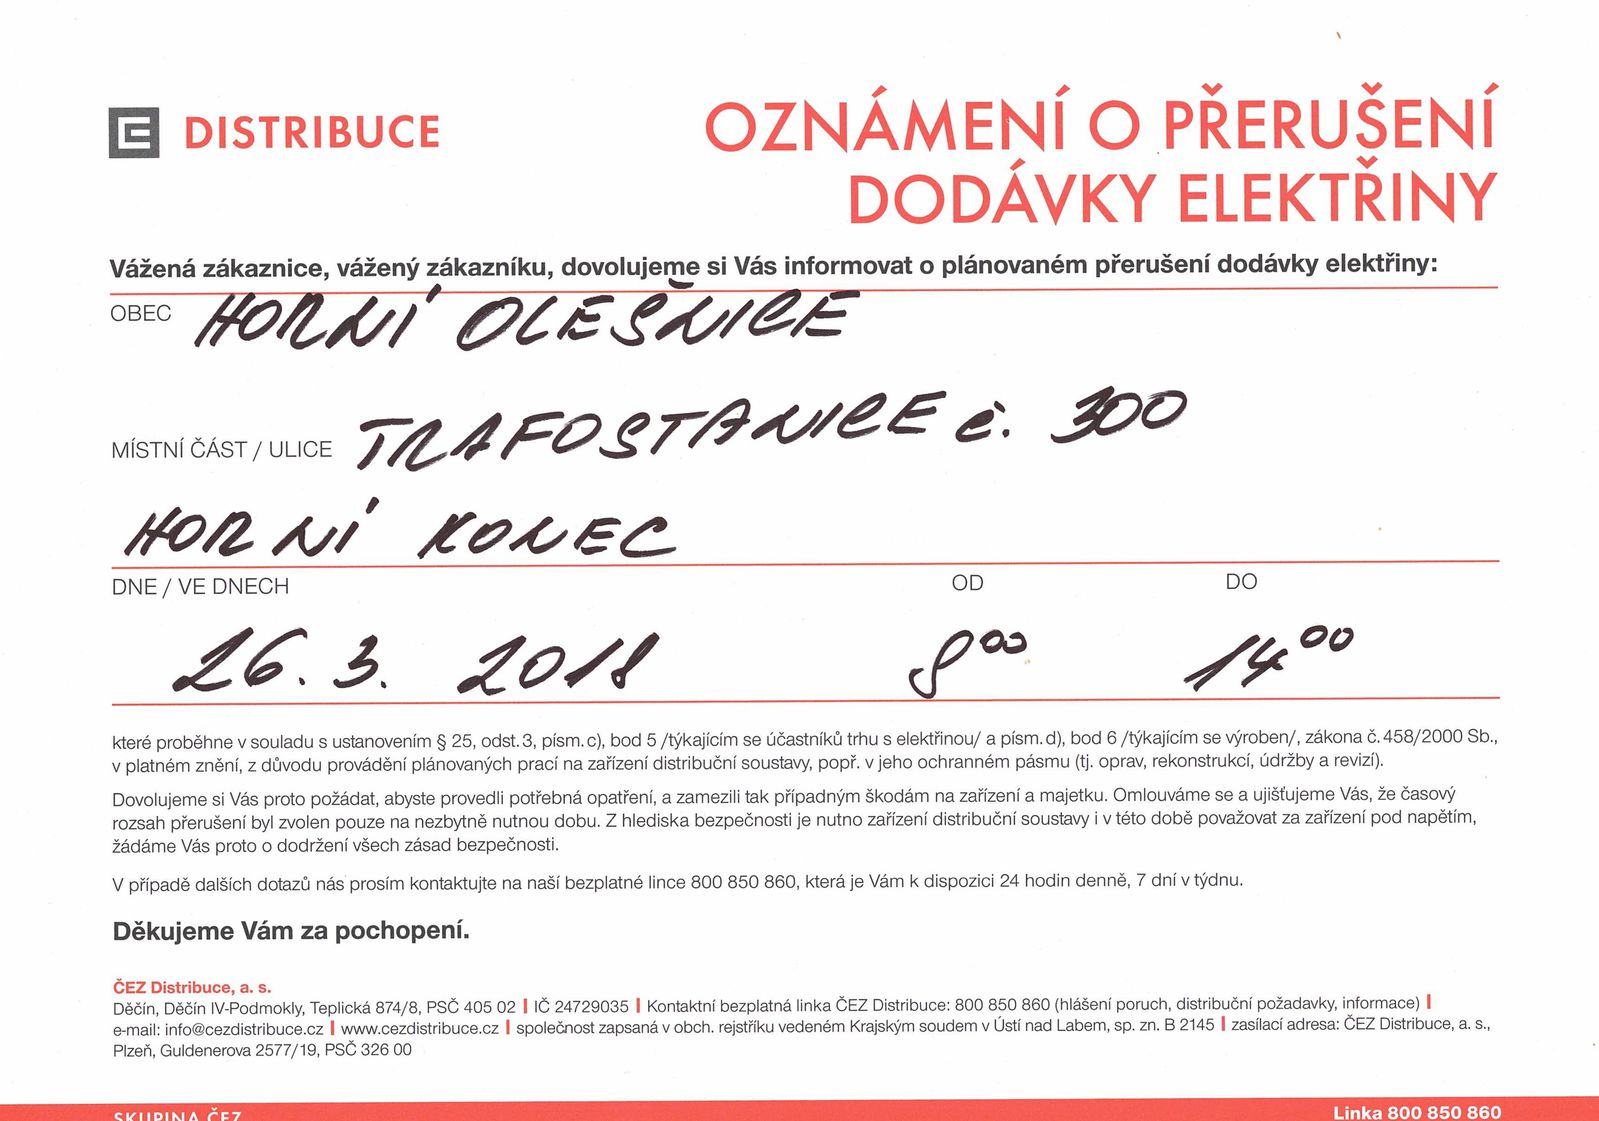 Oznámení o přerušení dodávky elektřiny dne 23.3.2018 Horní Olešnice, horní konec